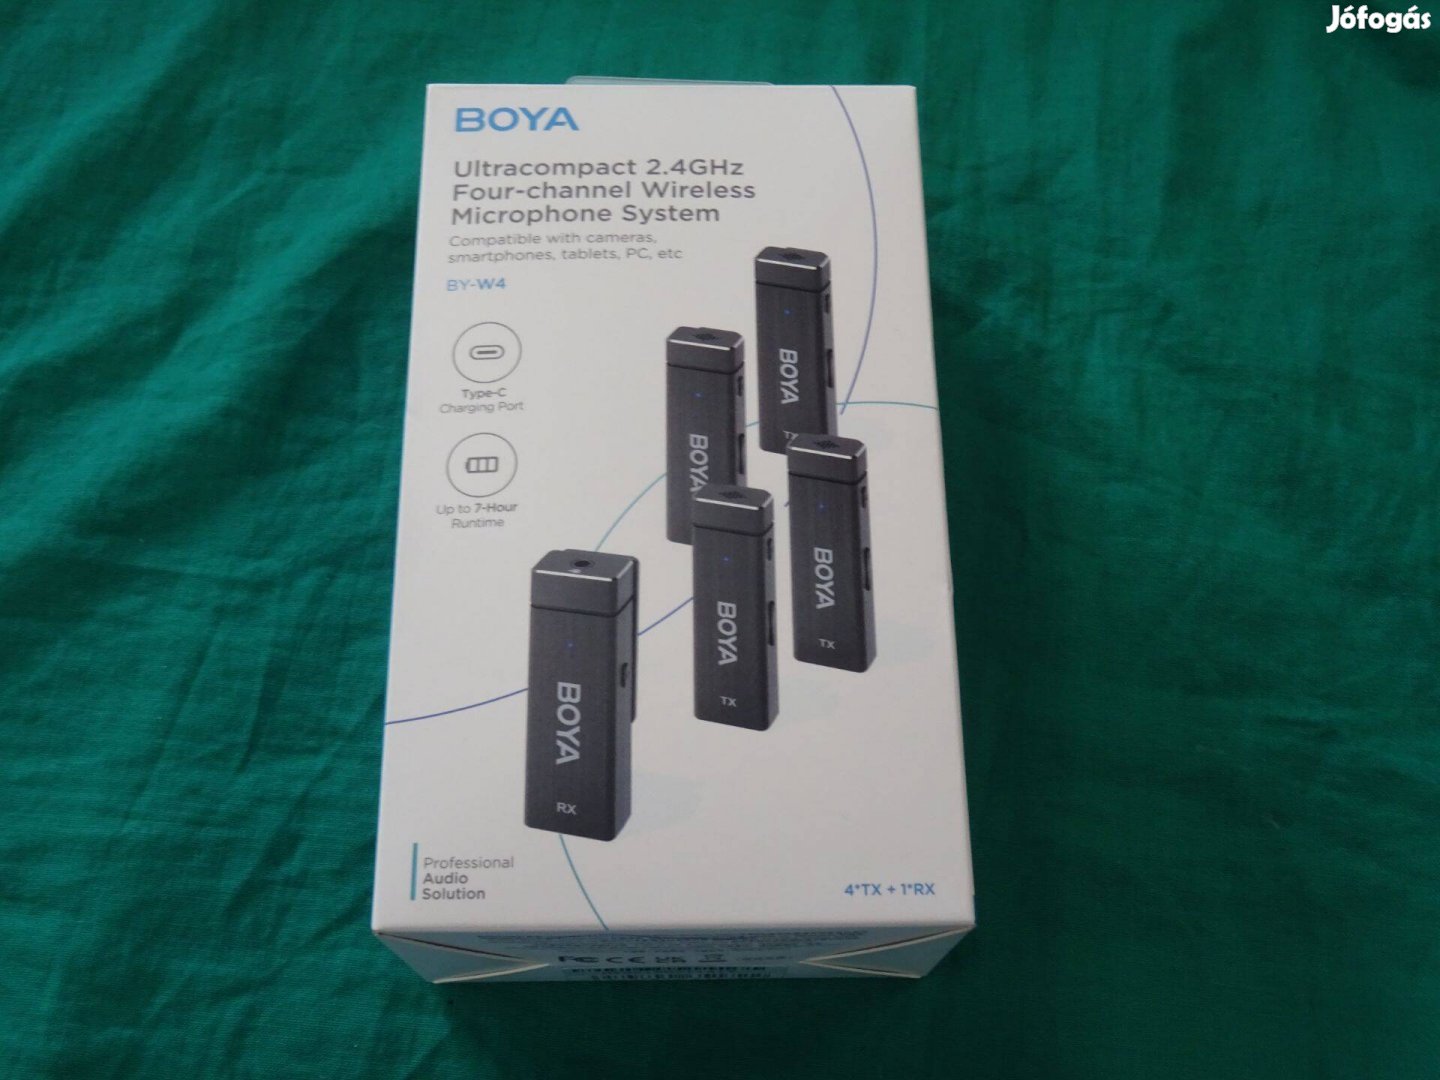 Boya by-W4 kamera, PC és mobil mikrofon, négycsatornás